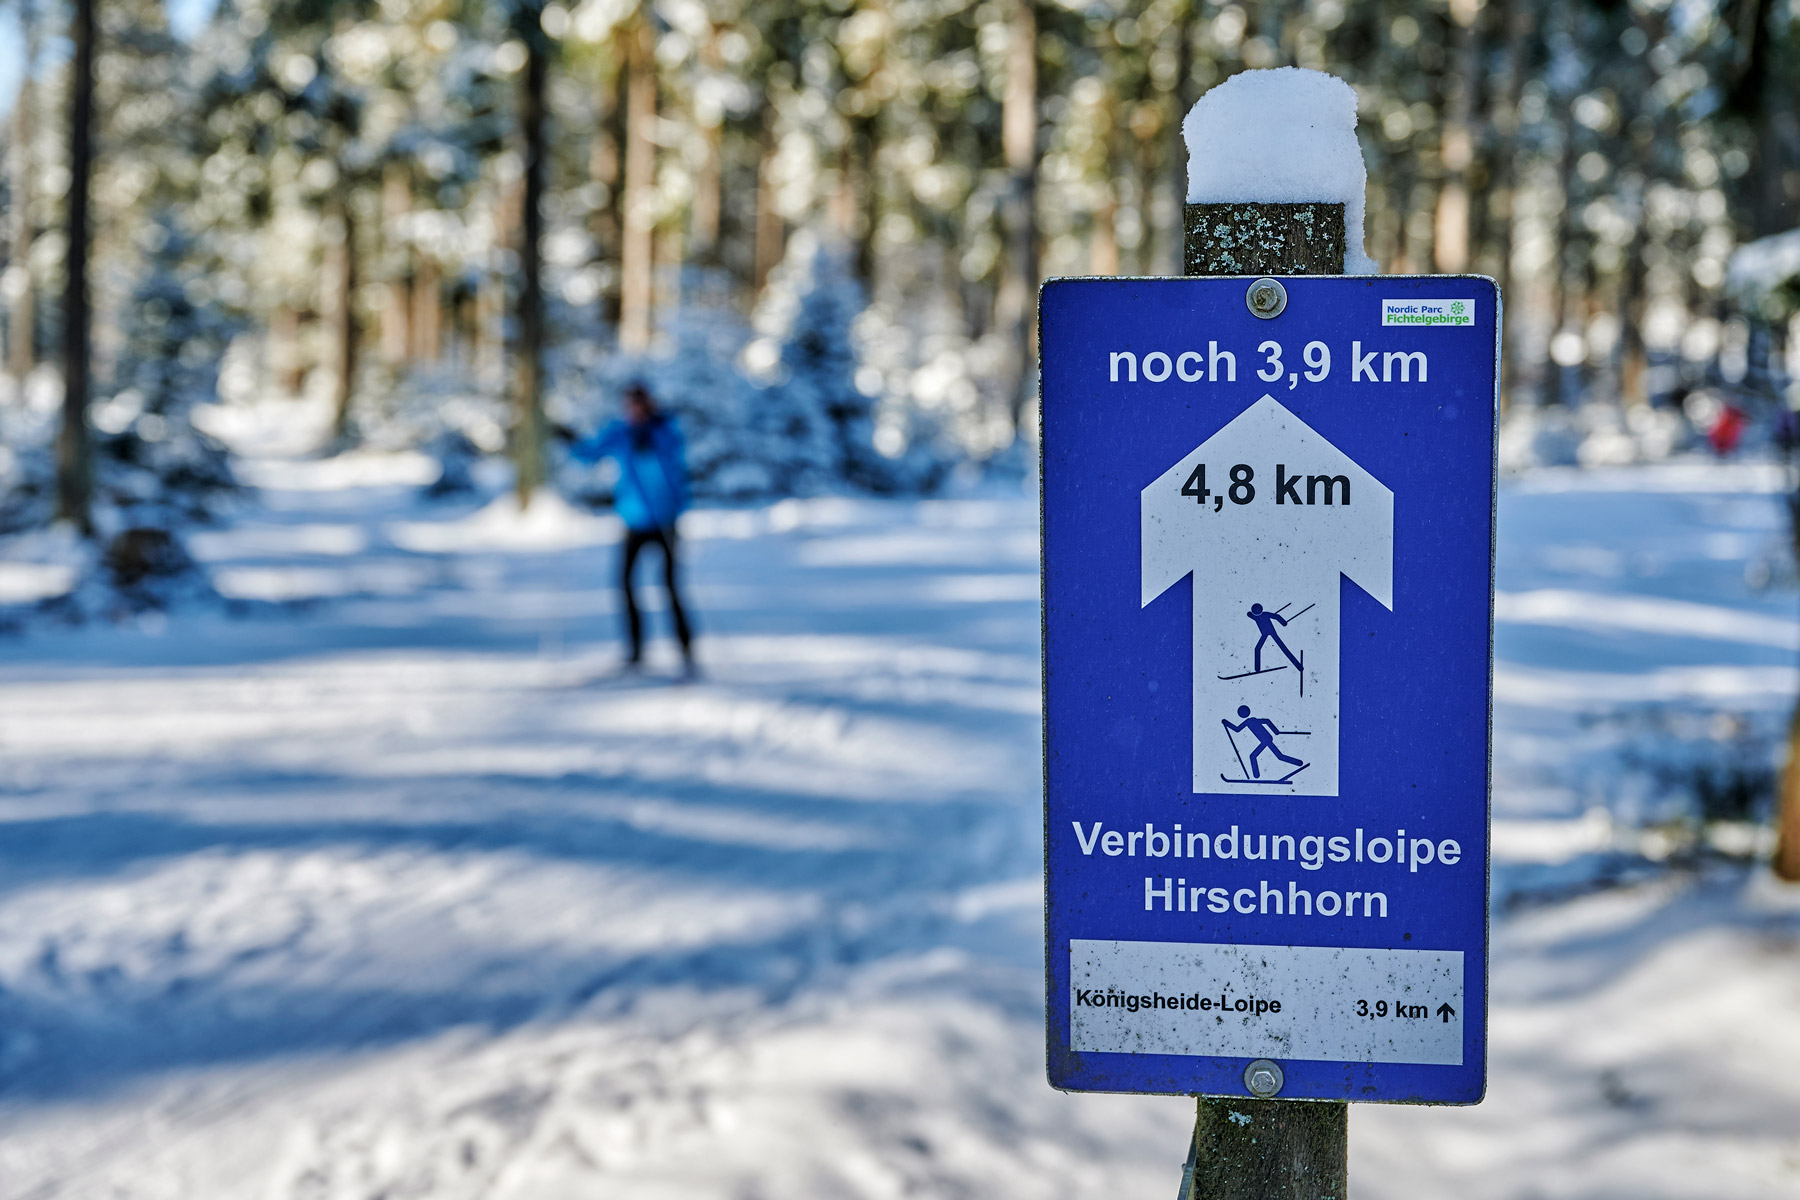 Loipen, Wanderwege, Skipisten – den Winter draußen genießen © Tourismuszentrale Fichtelgebirge/Florian Trykowski